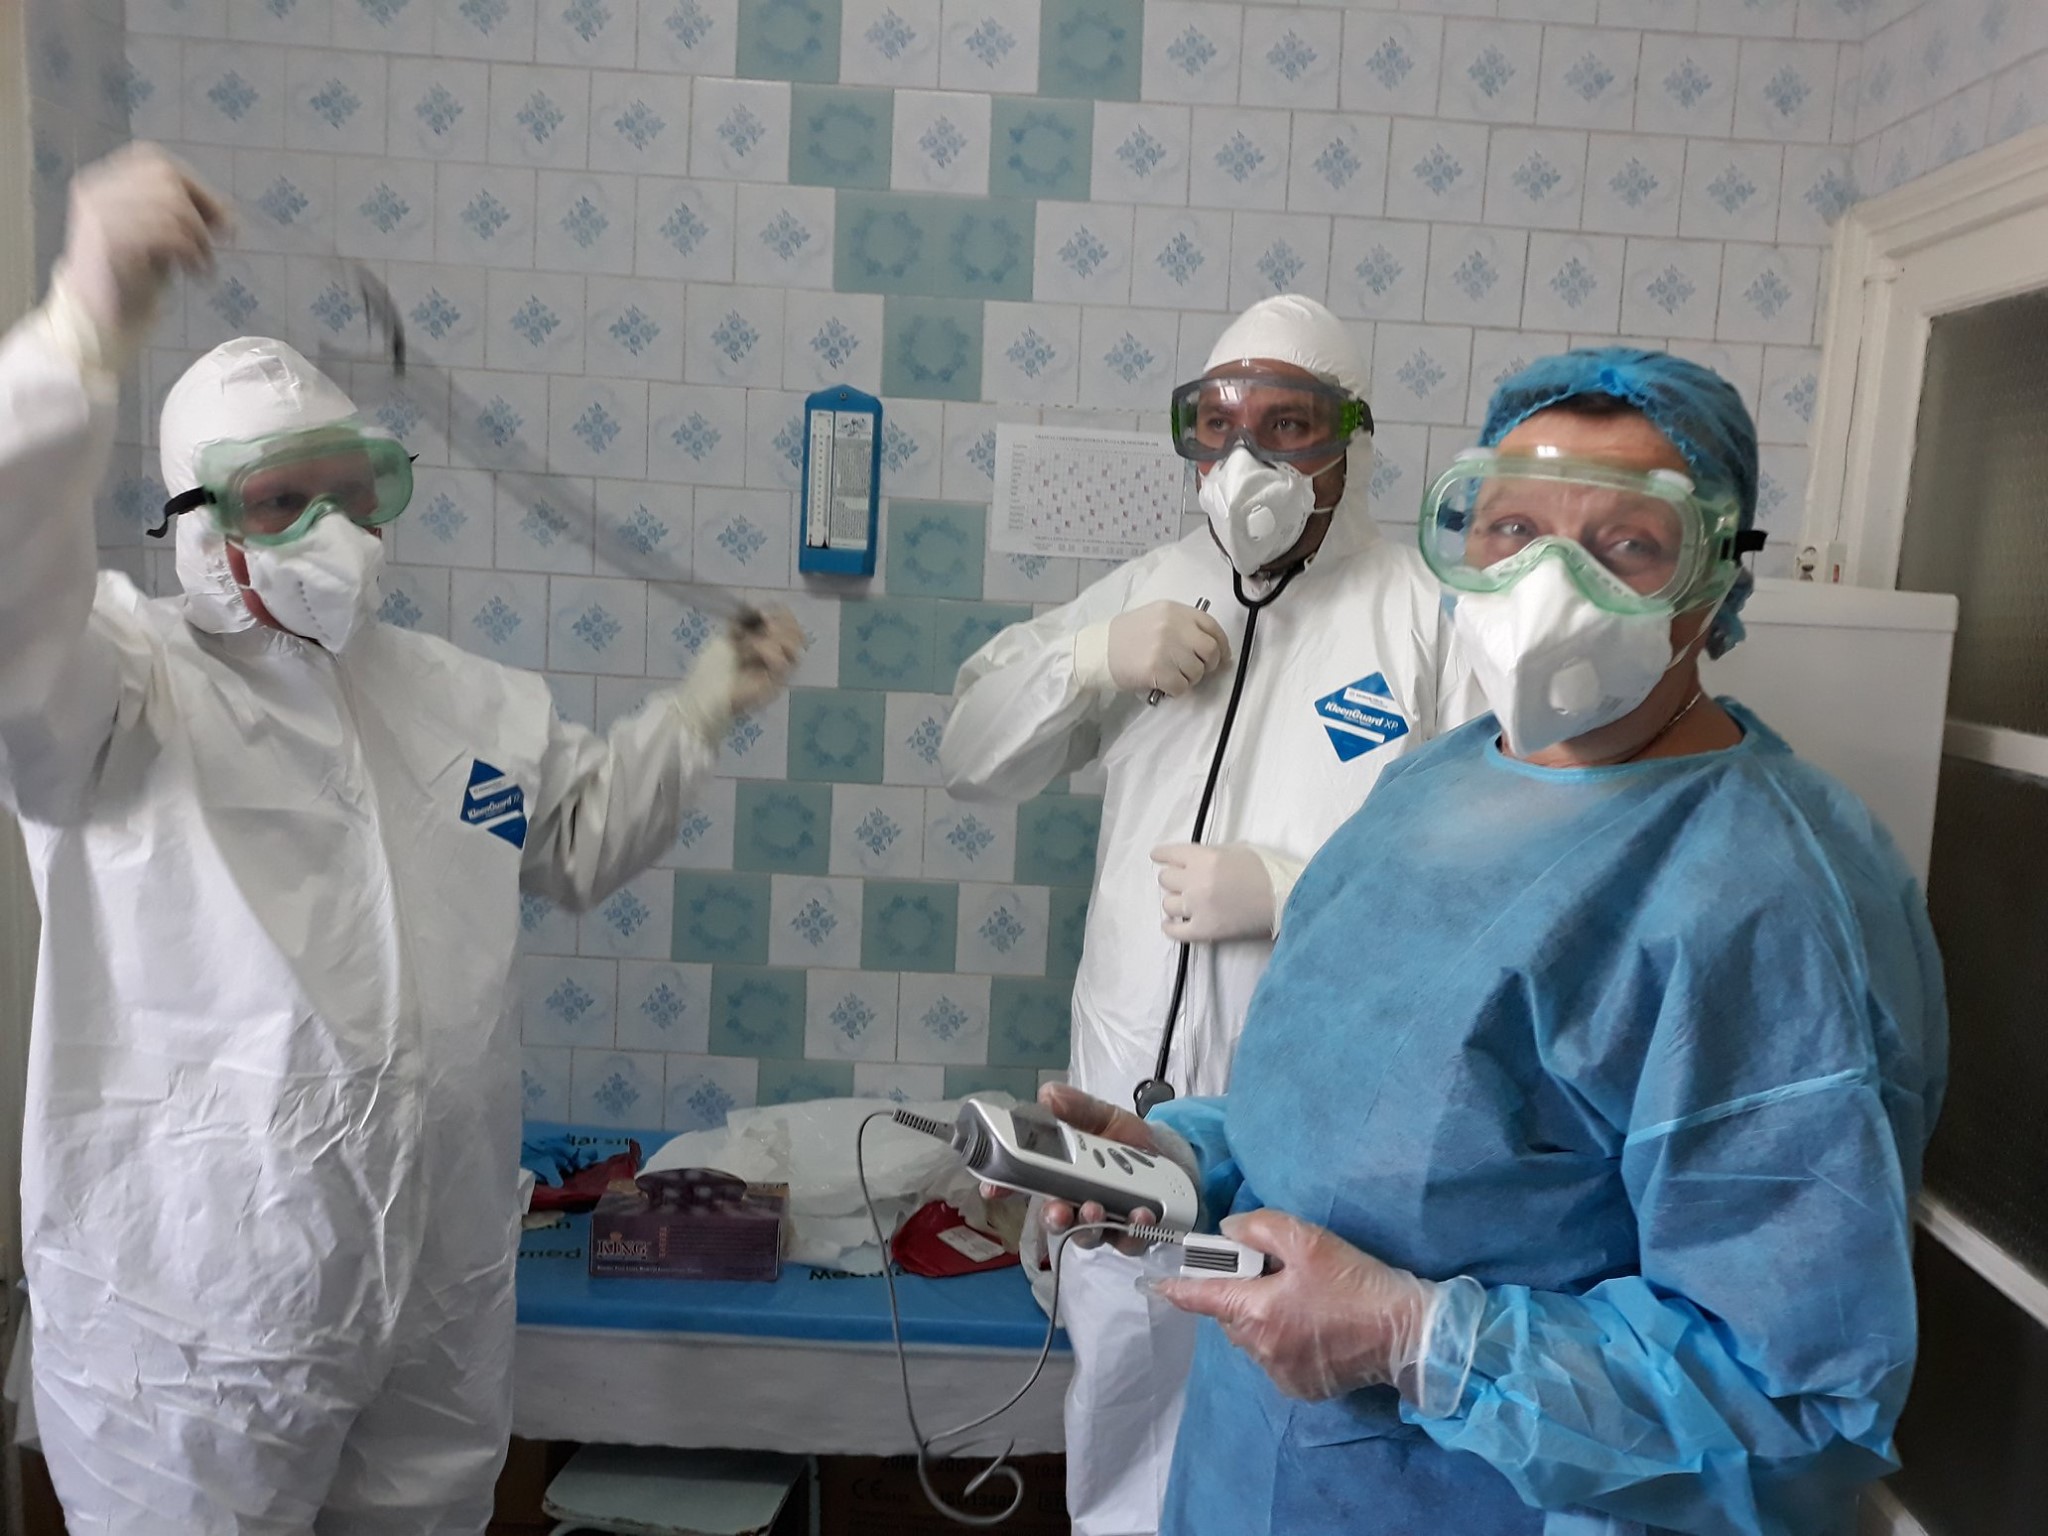 Коронавирус в Молдове. Как выглядит больница Тома Чорбэ изнутри (ФОТО)